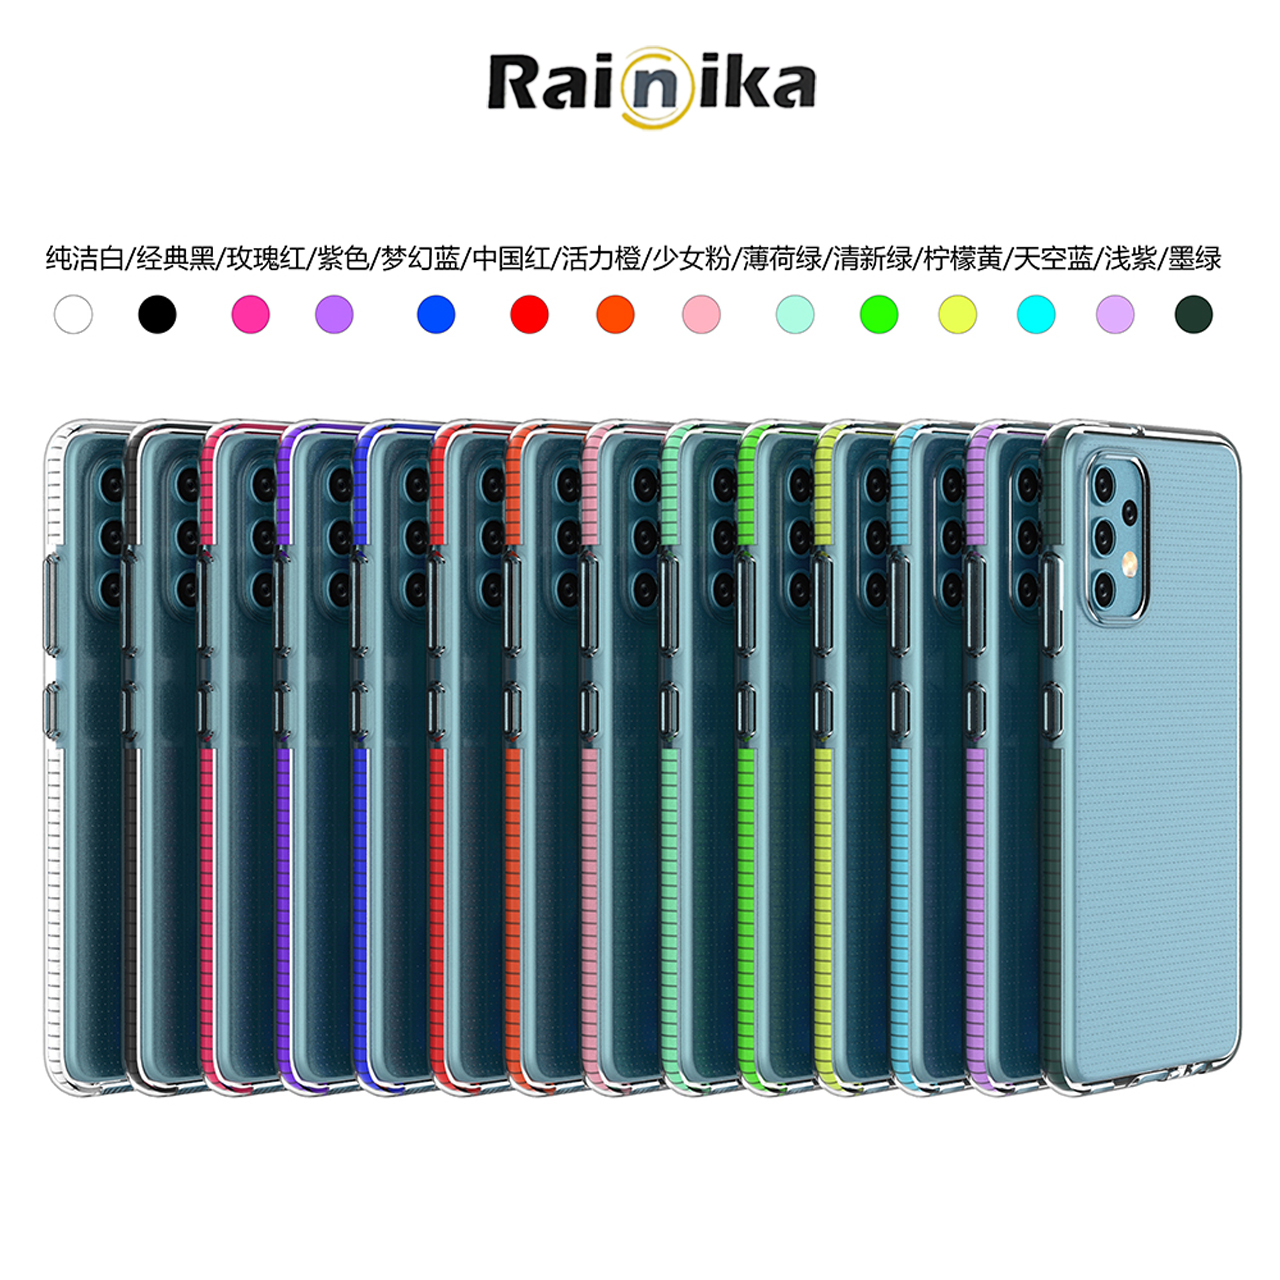 کاور رینیکا مدل Co111ers مناسب برای گوشی موبایل سامسونگ Galaxy A53 5G